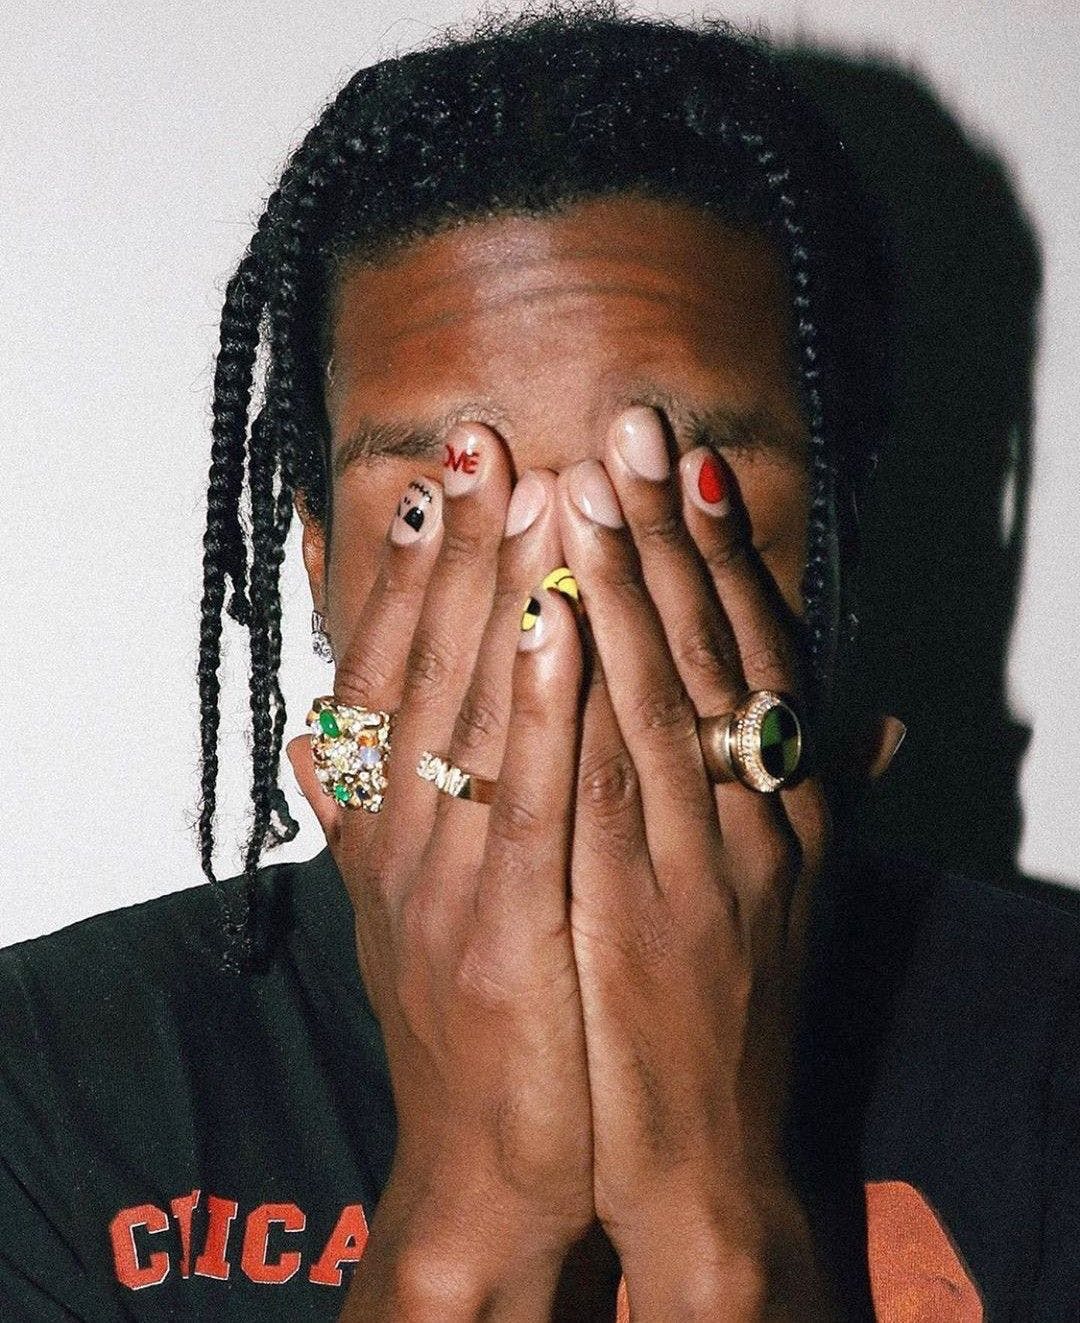 Siêu sao A$AP Rocky và niềm đam mê nghệ thuật móng tay - ảnh 8